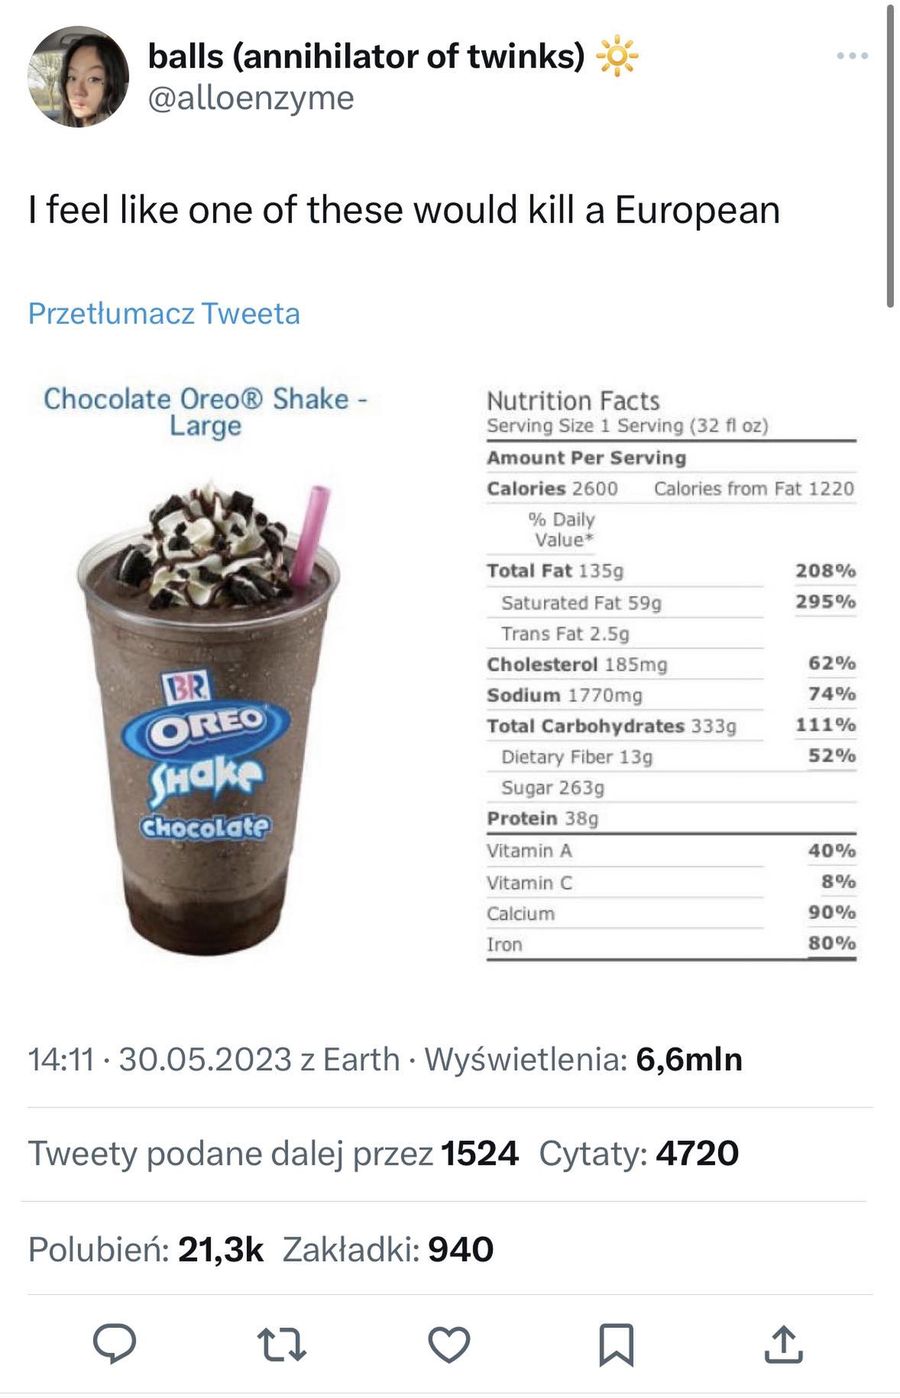 Duży shake Oreo liczy aż 2600 kalorii